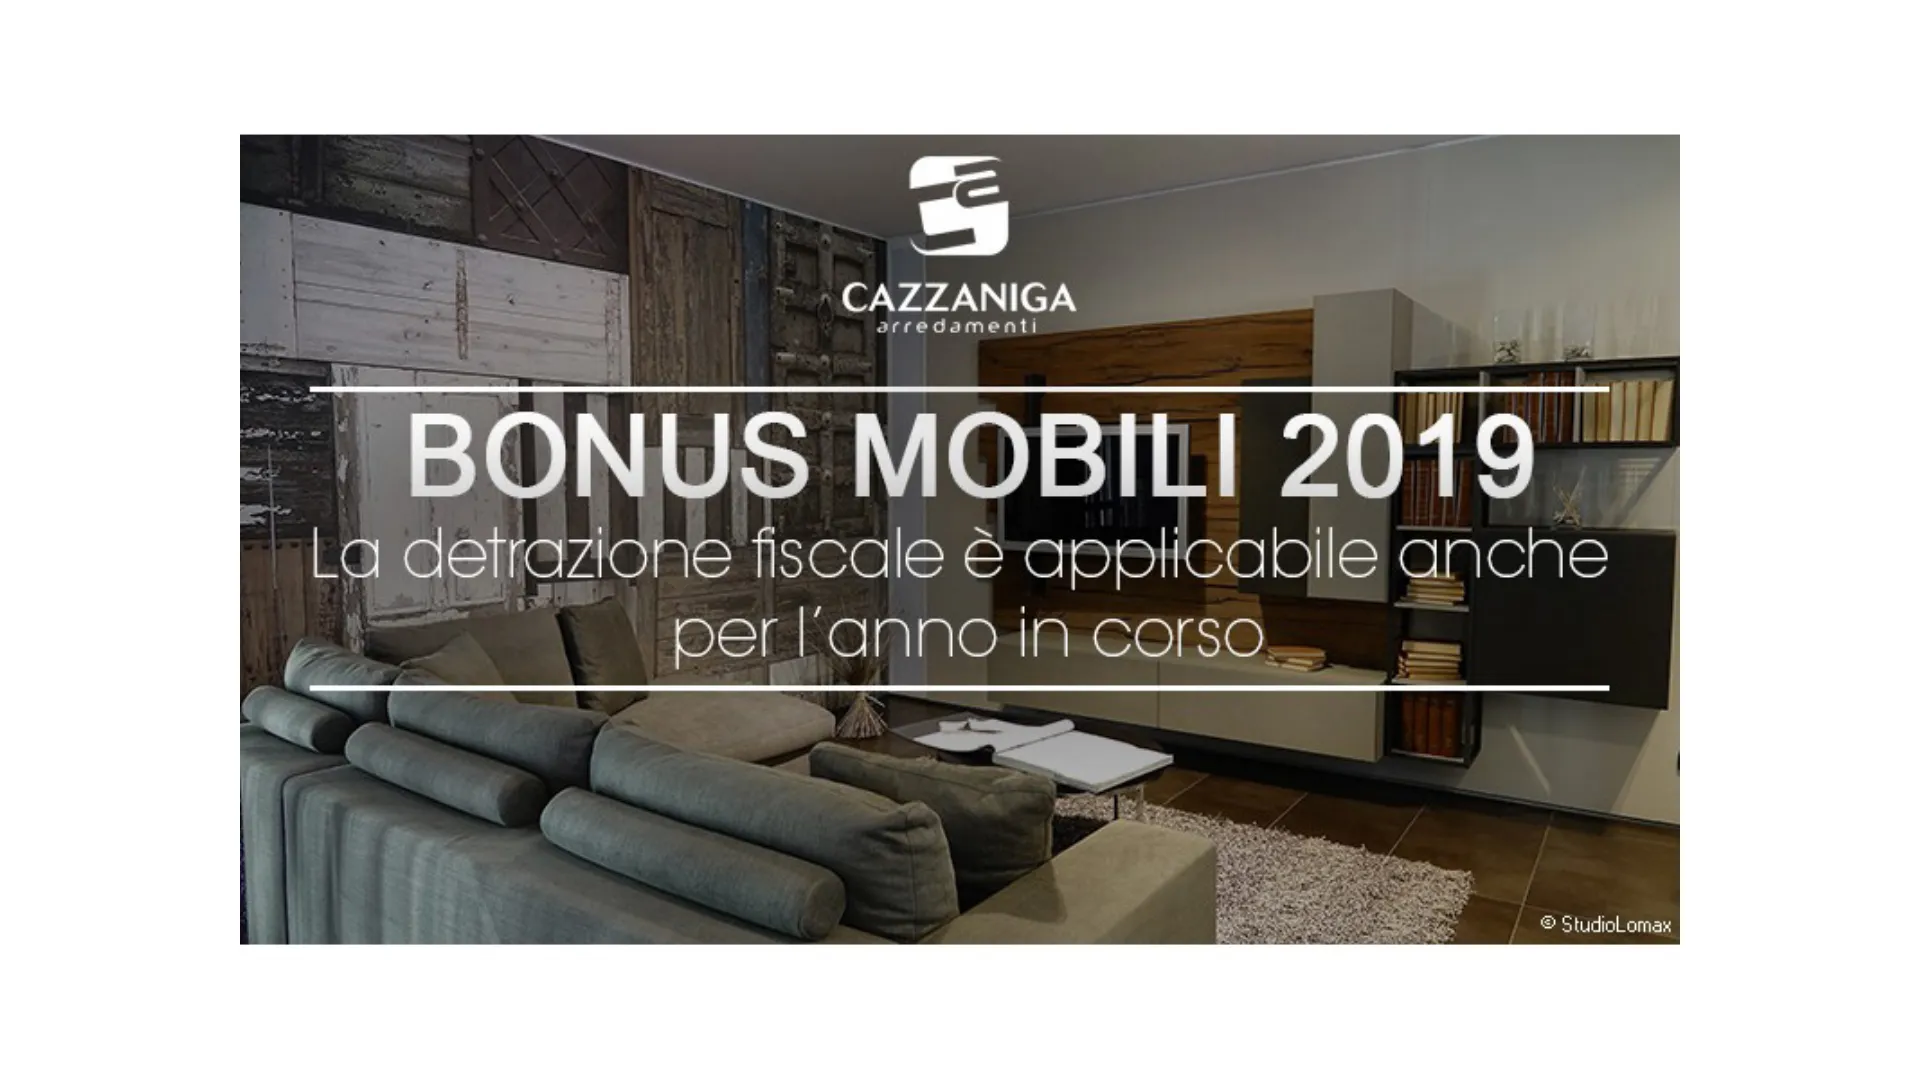 Bonus Mobili 2019 Cazzaniga Arredamenti